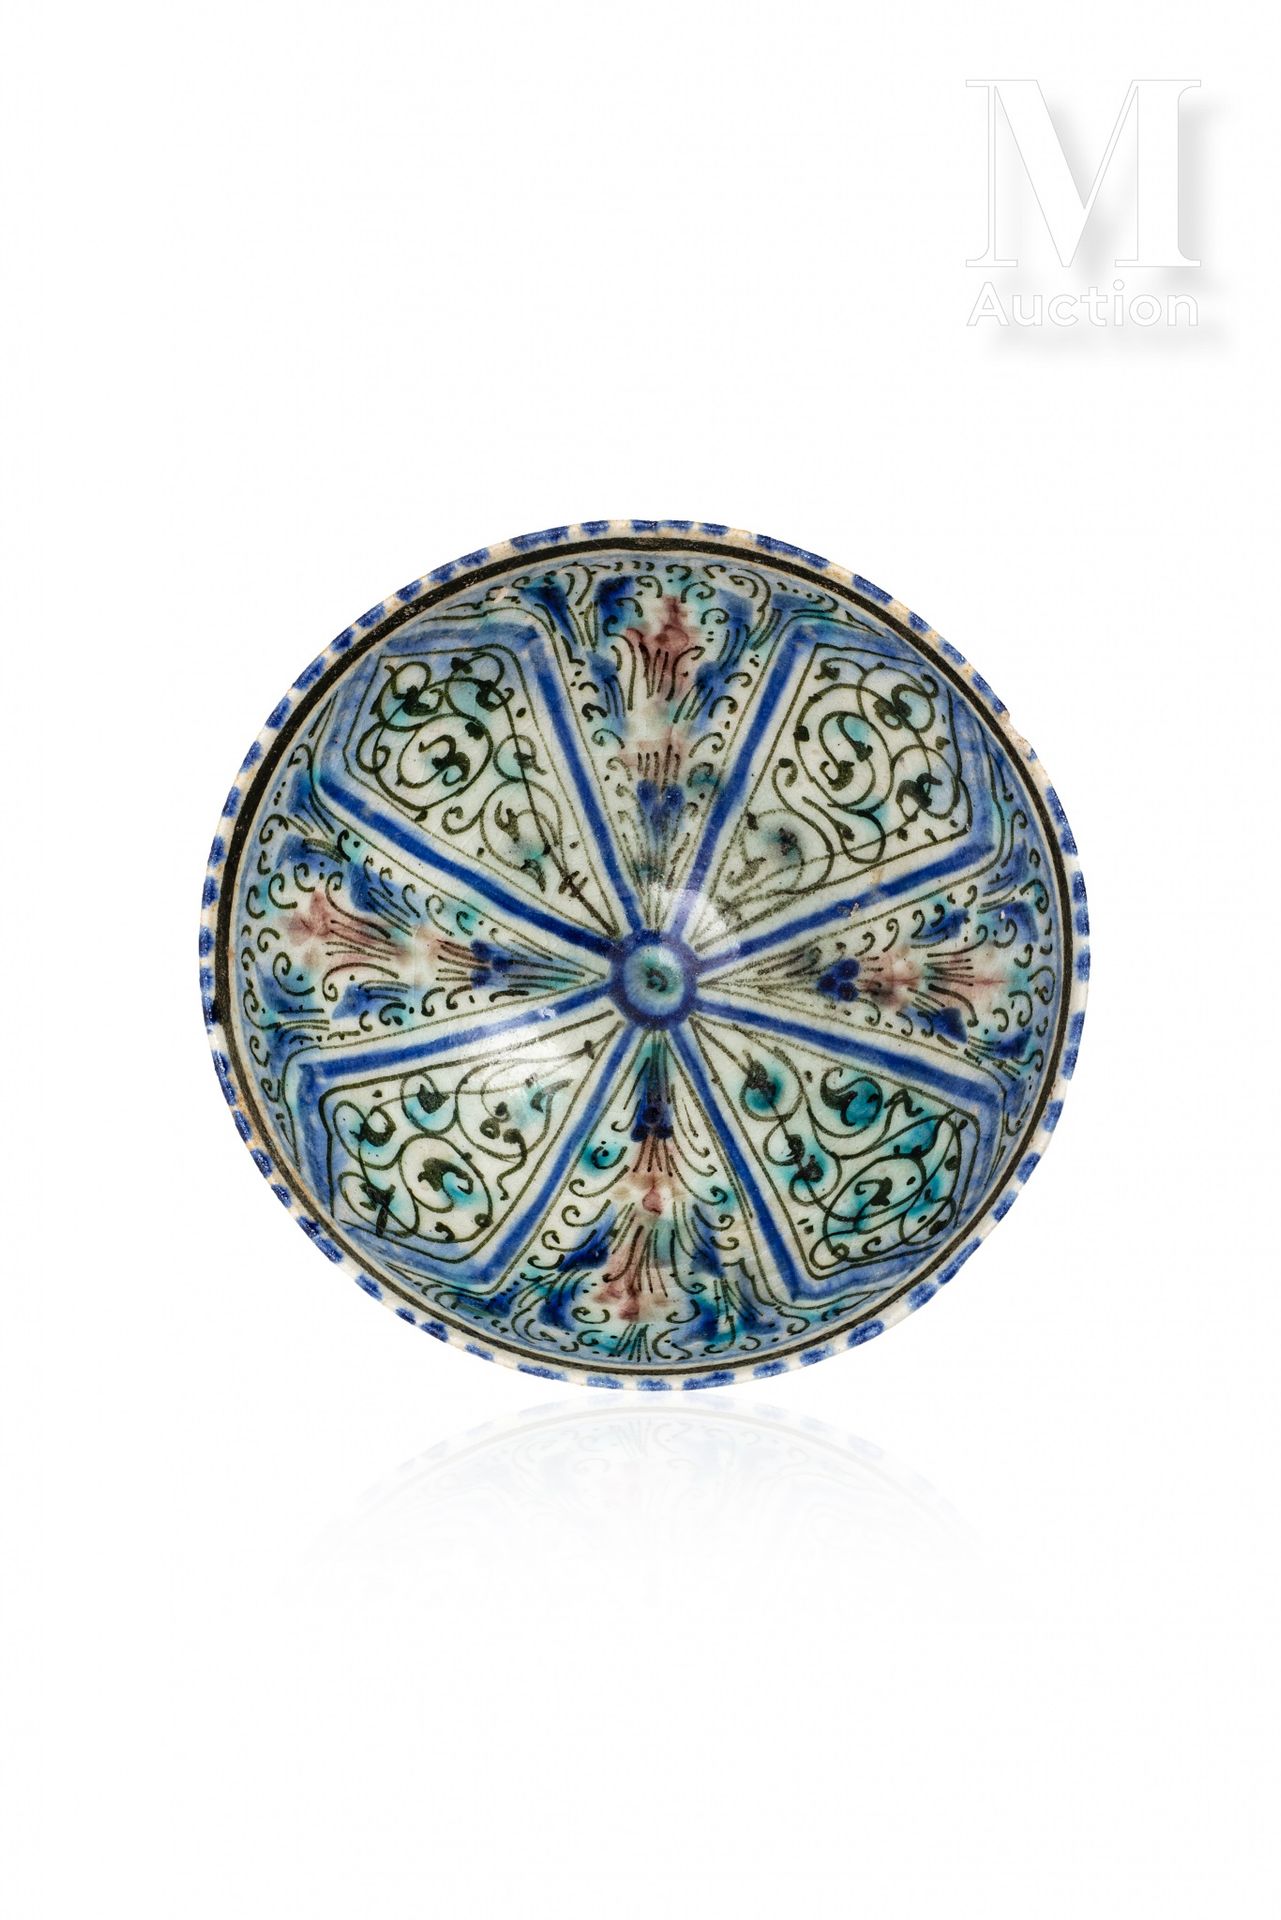 Coupe ilkhanide Iran, Sultanabad, XIV secolo

Una ciotola con piedistallo in cer&hellip;